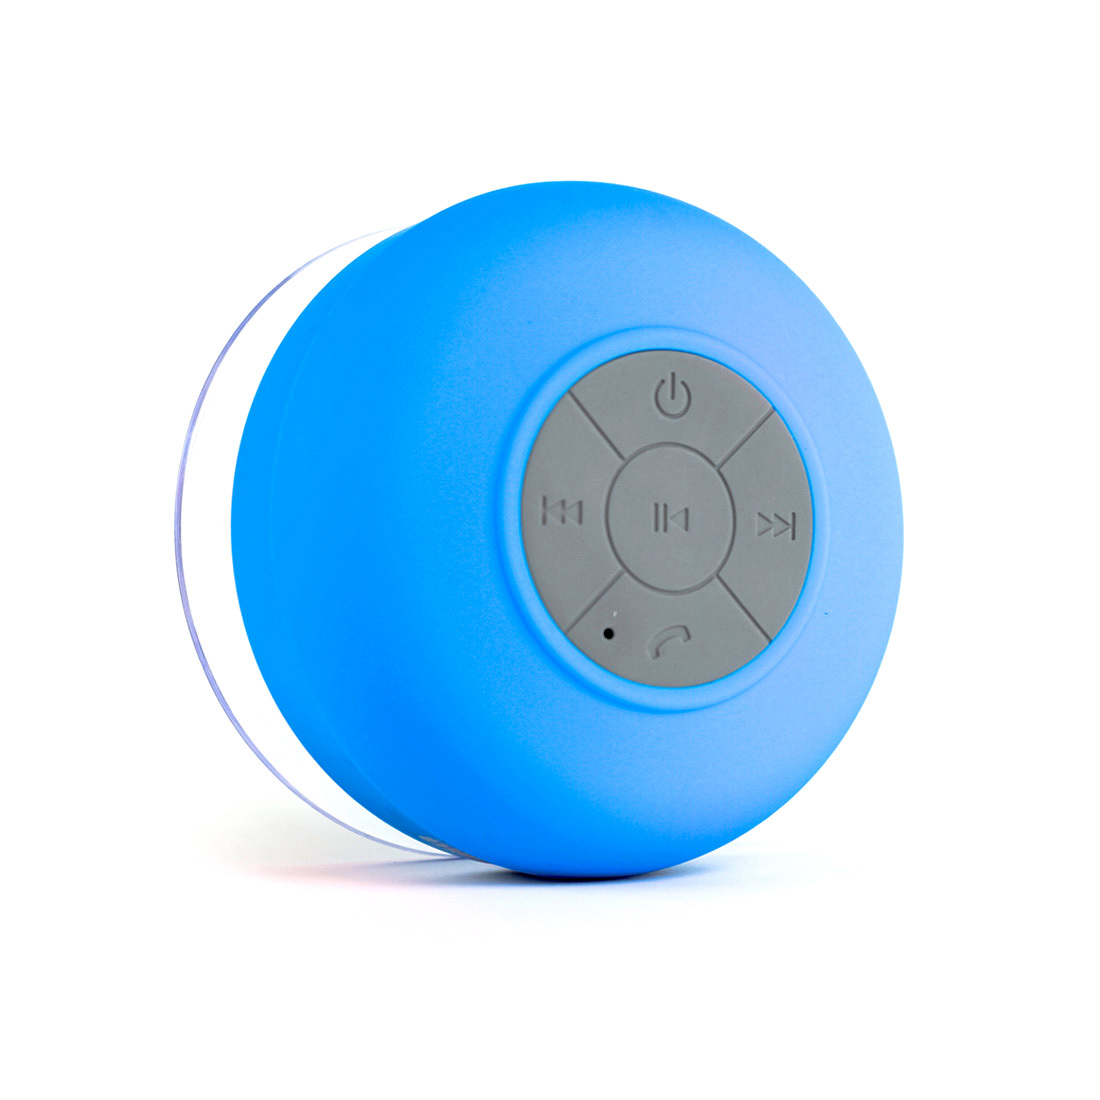 Wireless Waterproof Bluetooth Shower Speaker from Colourblocker